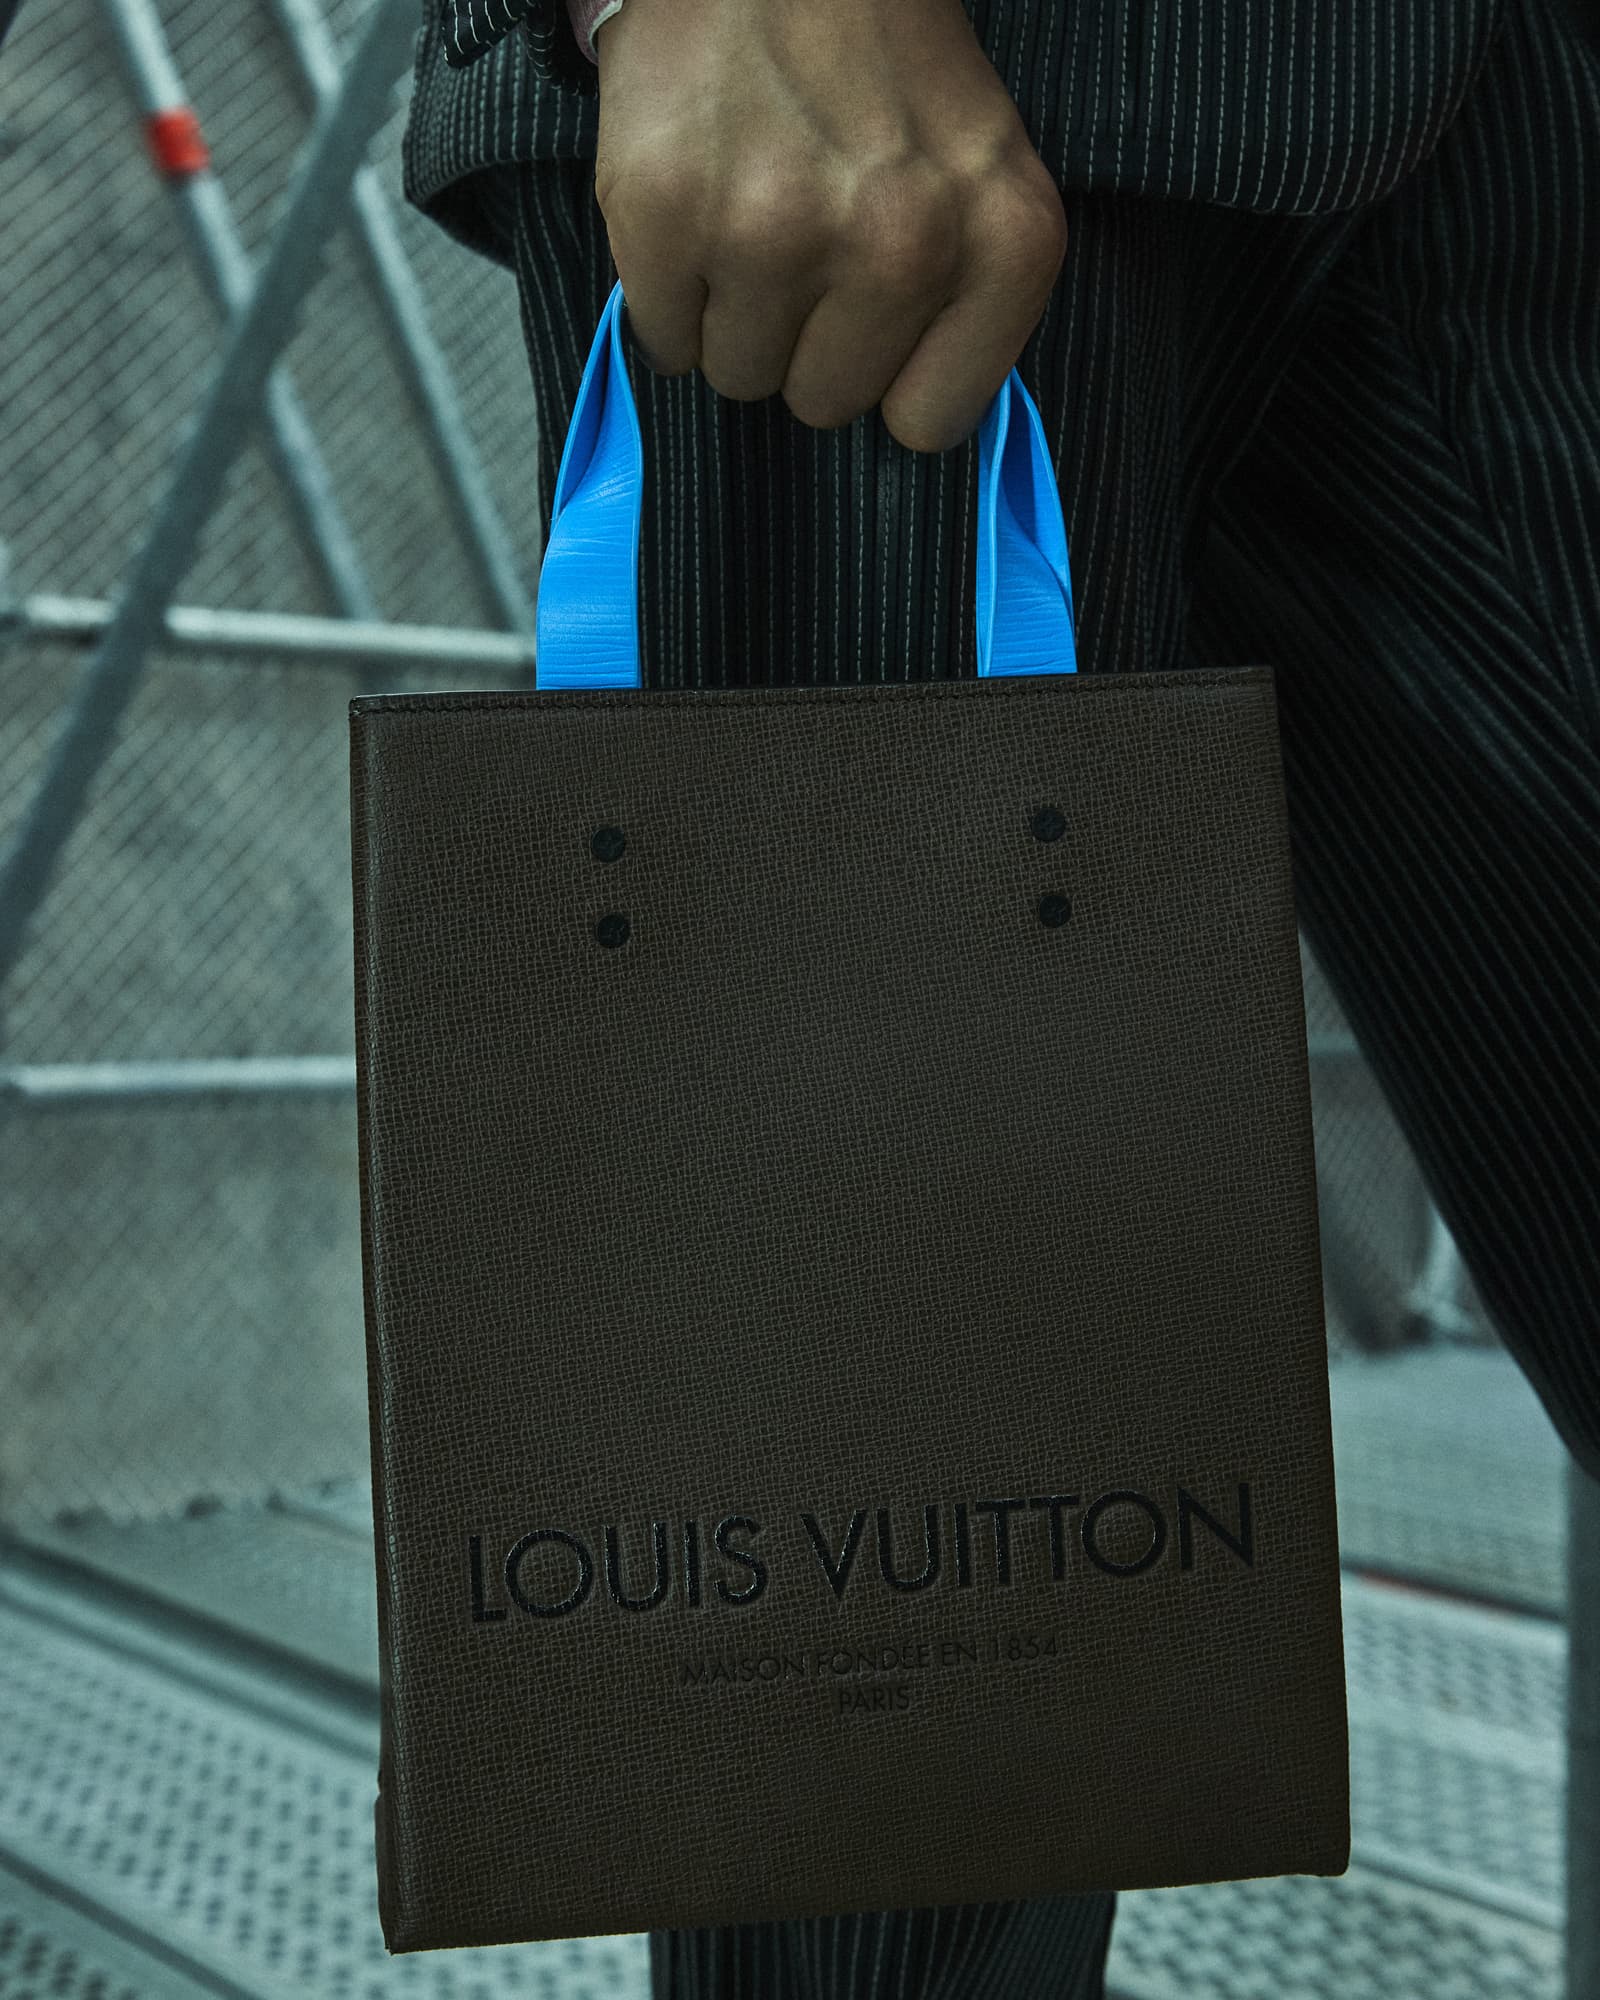 Louis Vuitton Spring-Summer 2021 Men's Fashion Pop-up in Beverly Hills -  POPBUFF